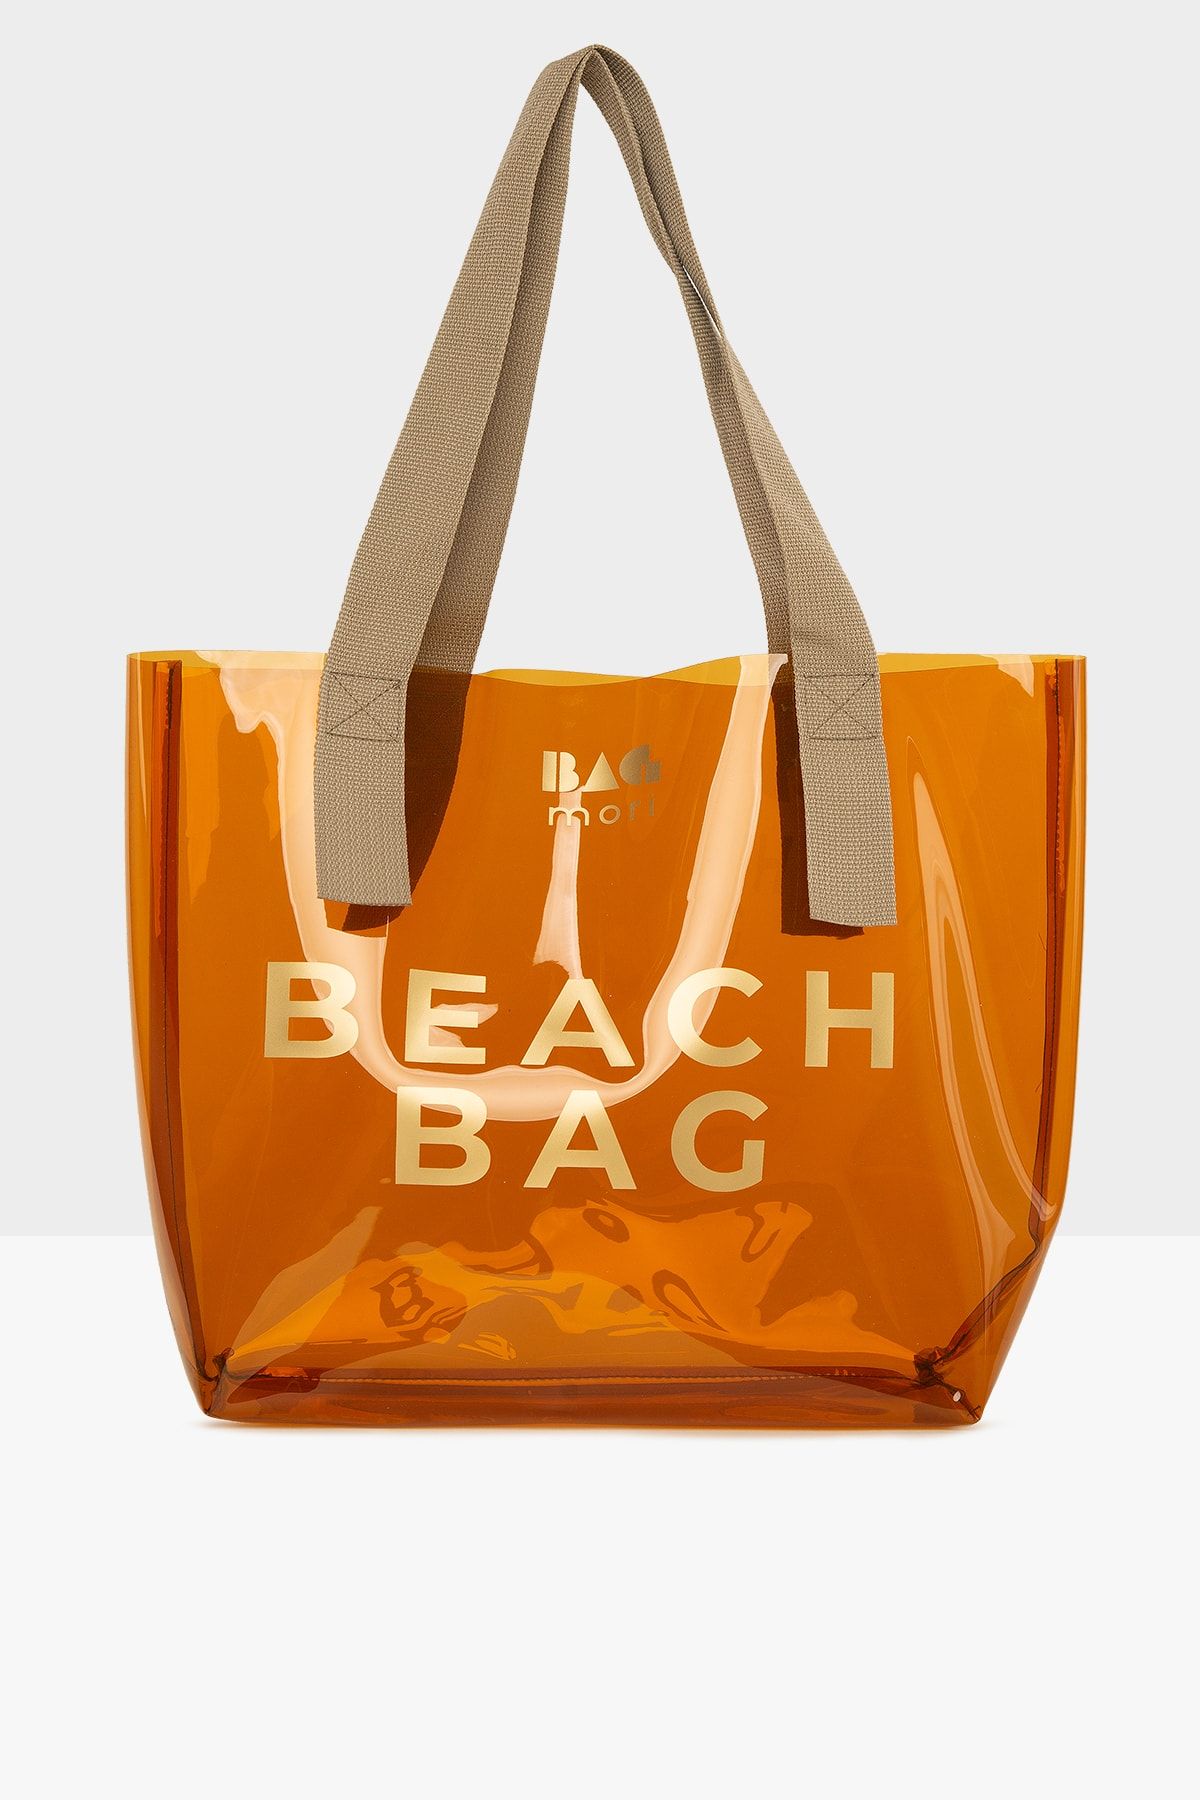 Bagmori Vizon Kadın Beach Bag Baskılı Şeffaf Plaj Çantası M000007257